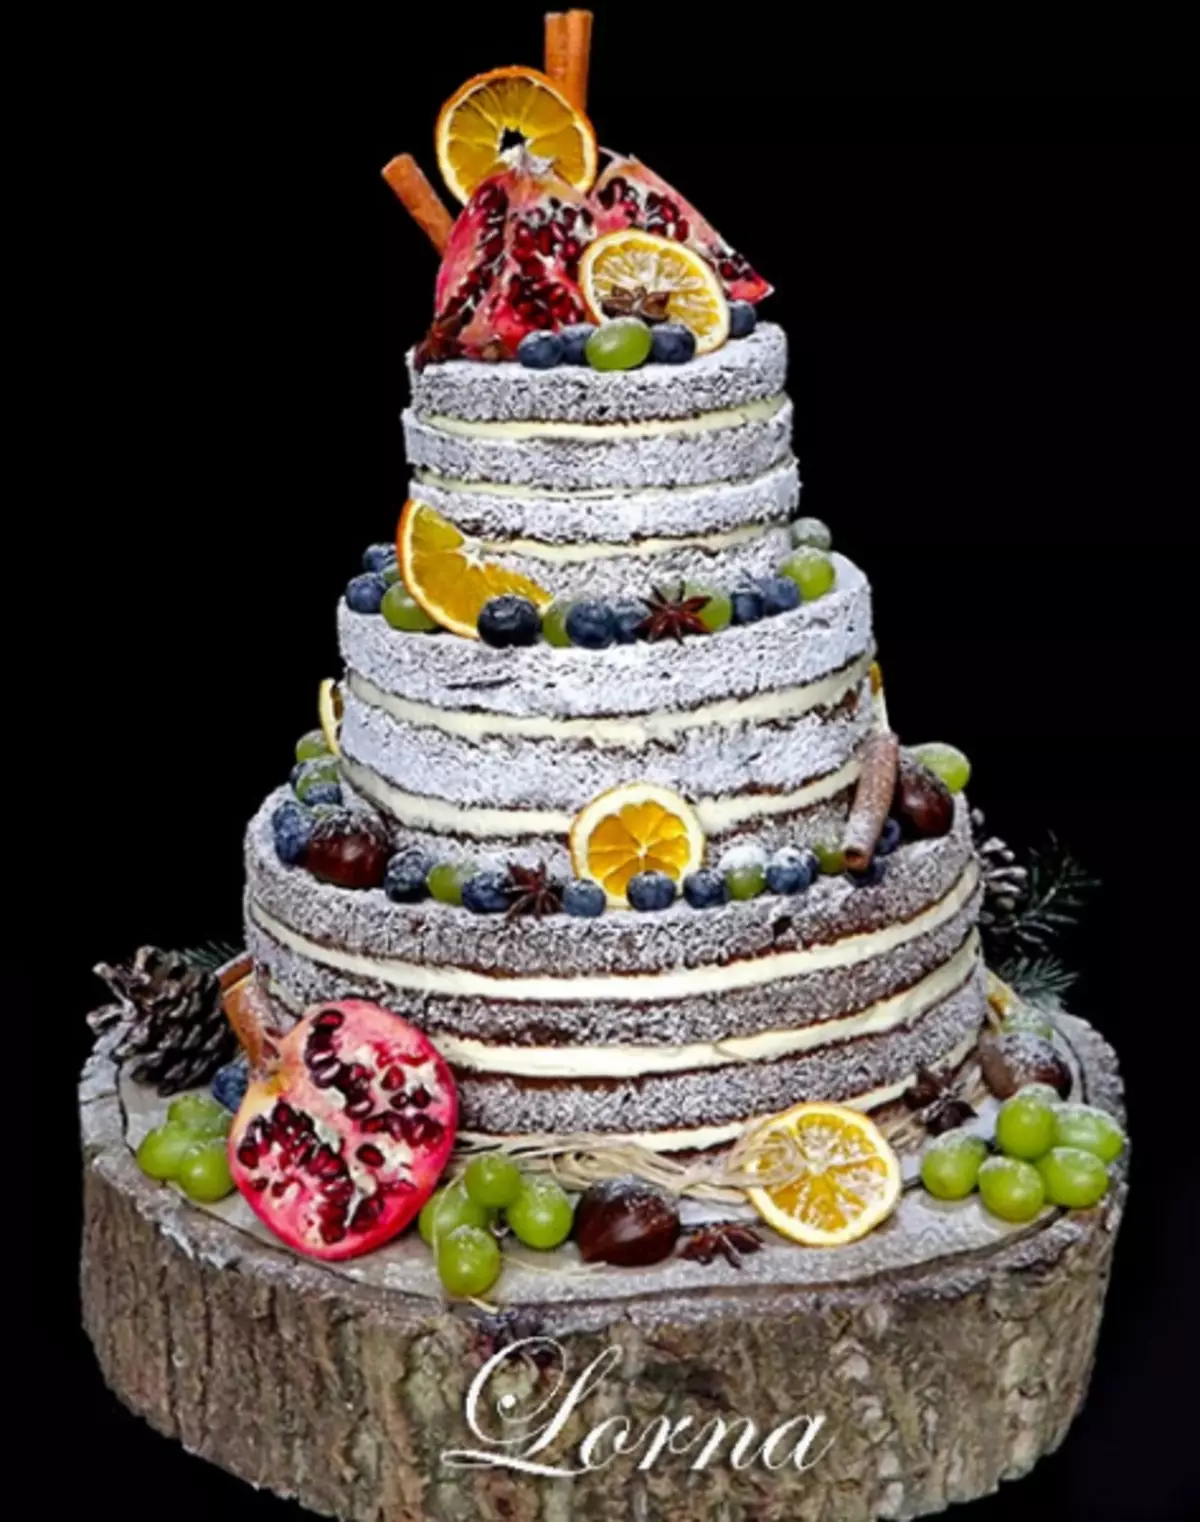 केकसाठी साखर मस्तकी बनविलेल्या झाडाच्या झाडाचा प्रभाव